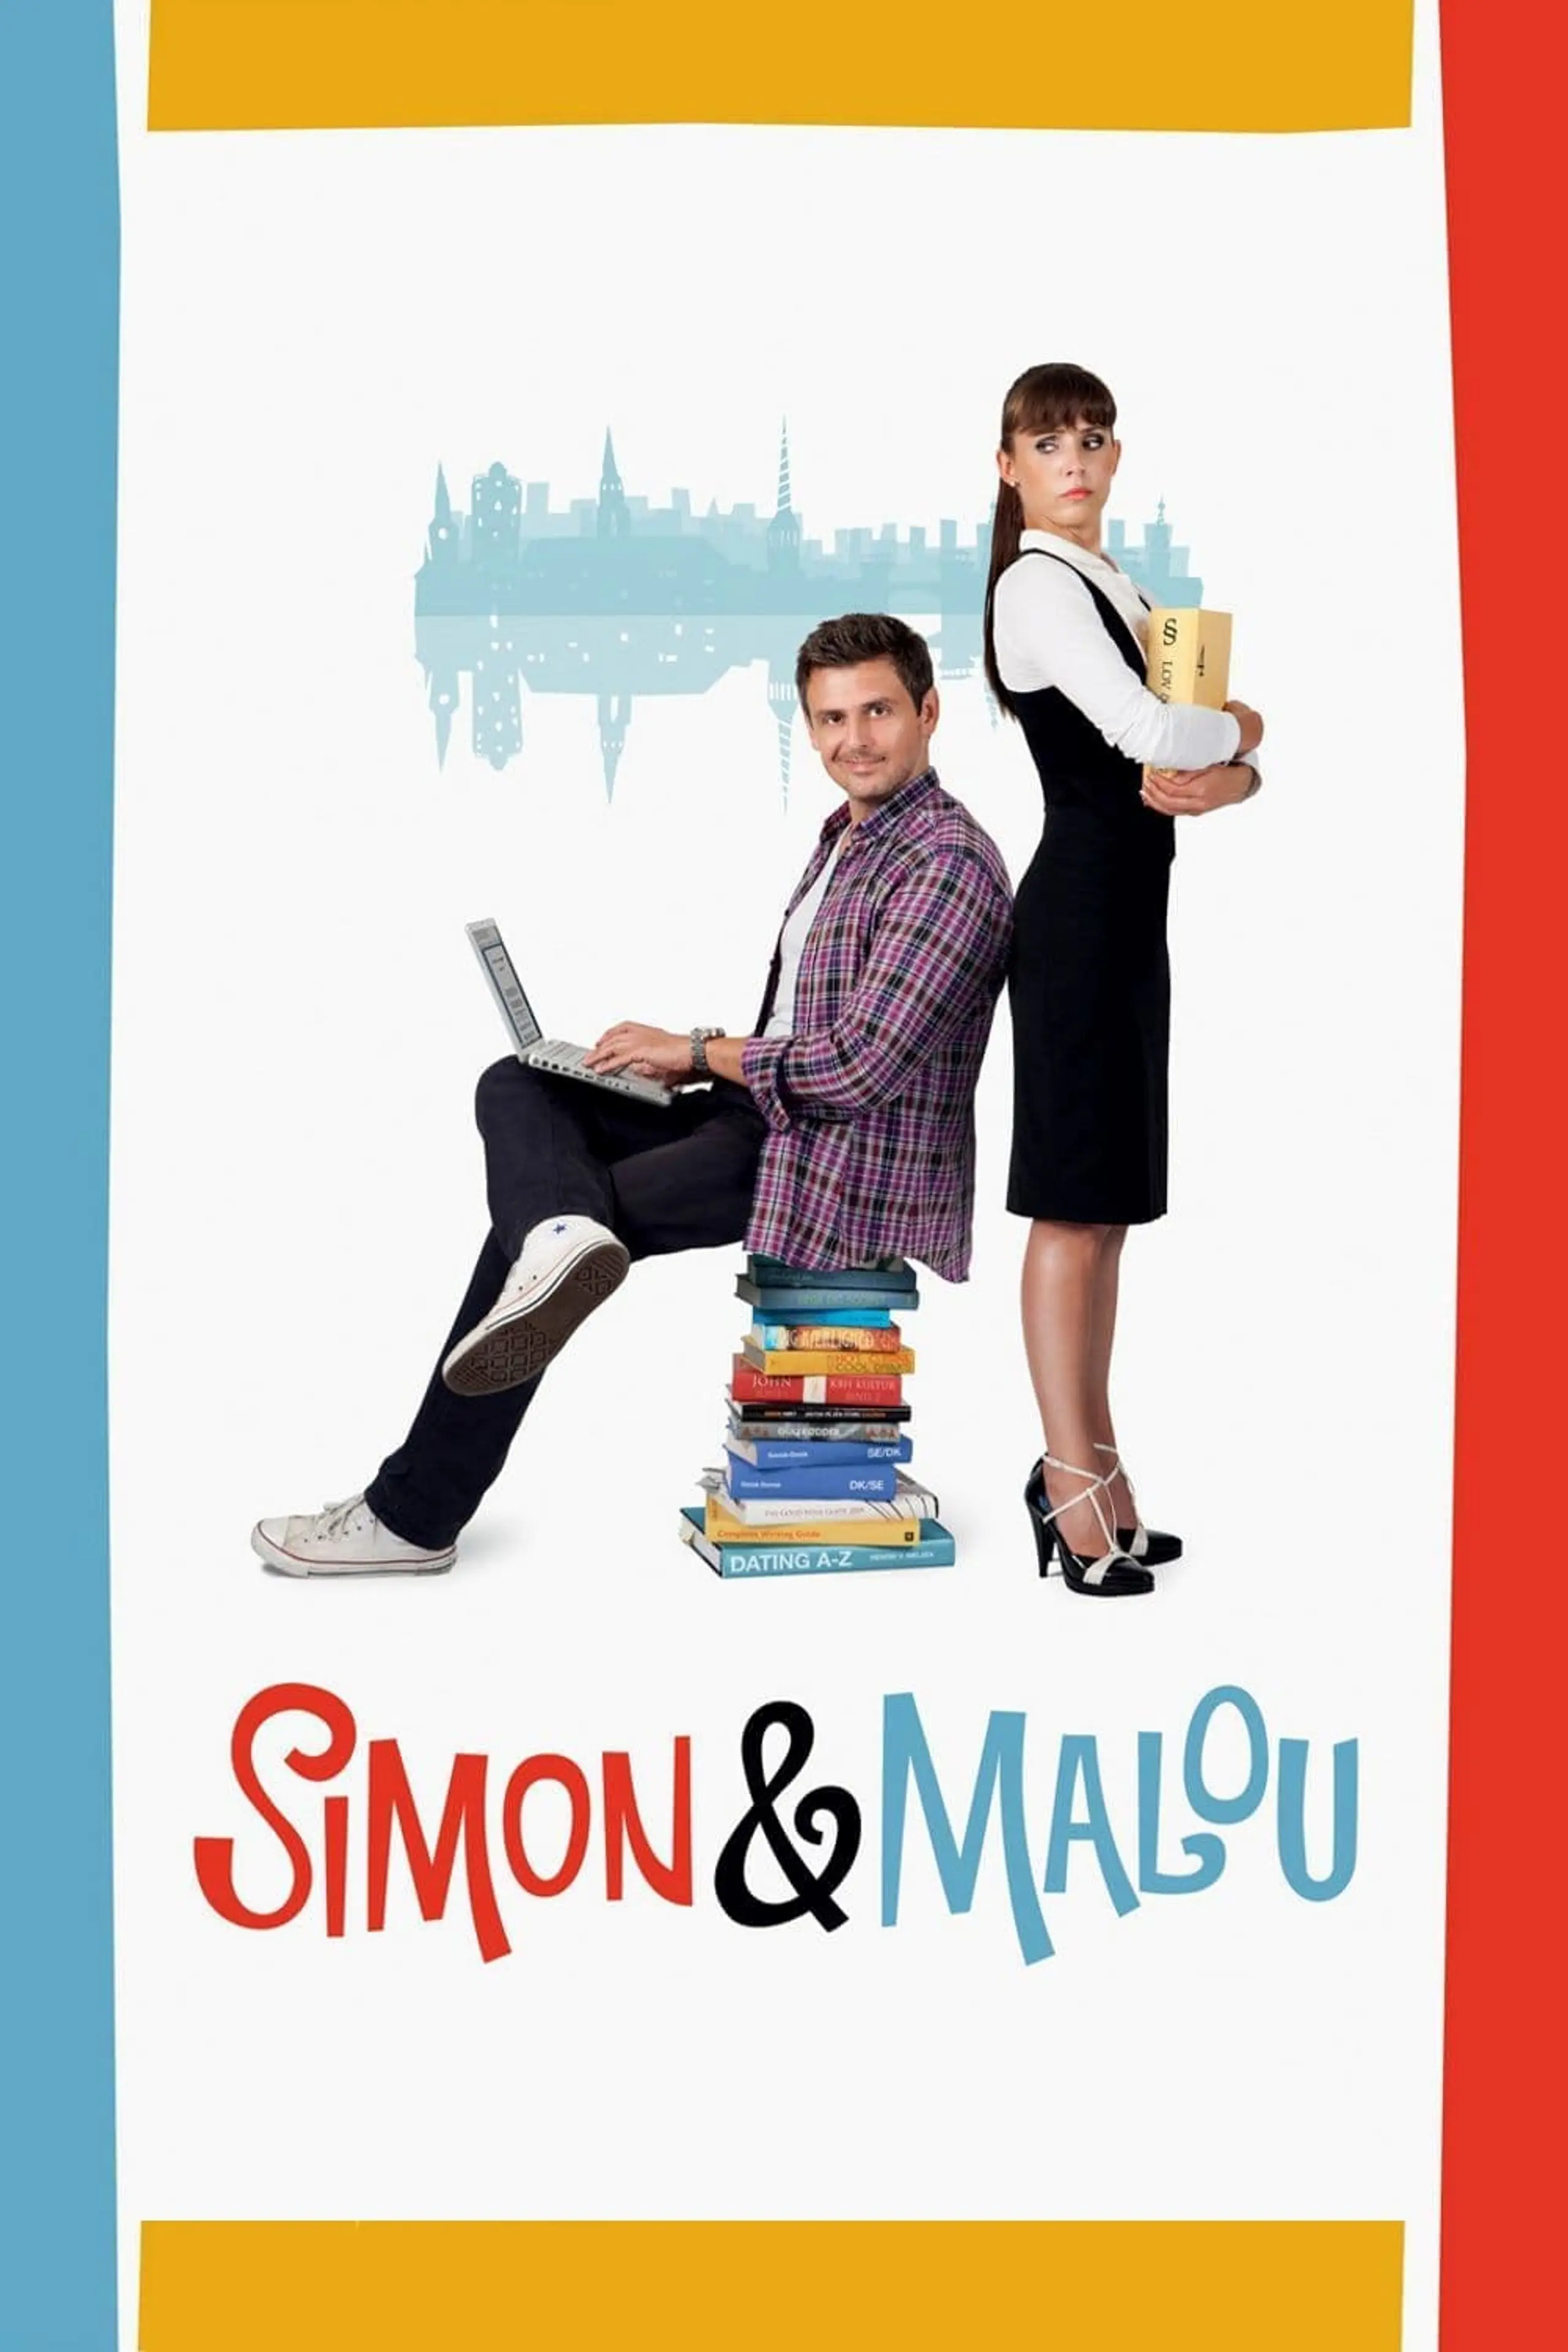 Simon & Malou